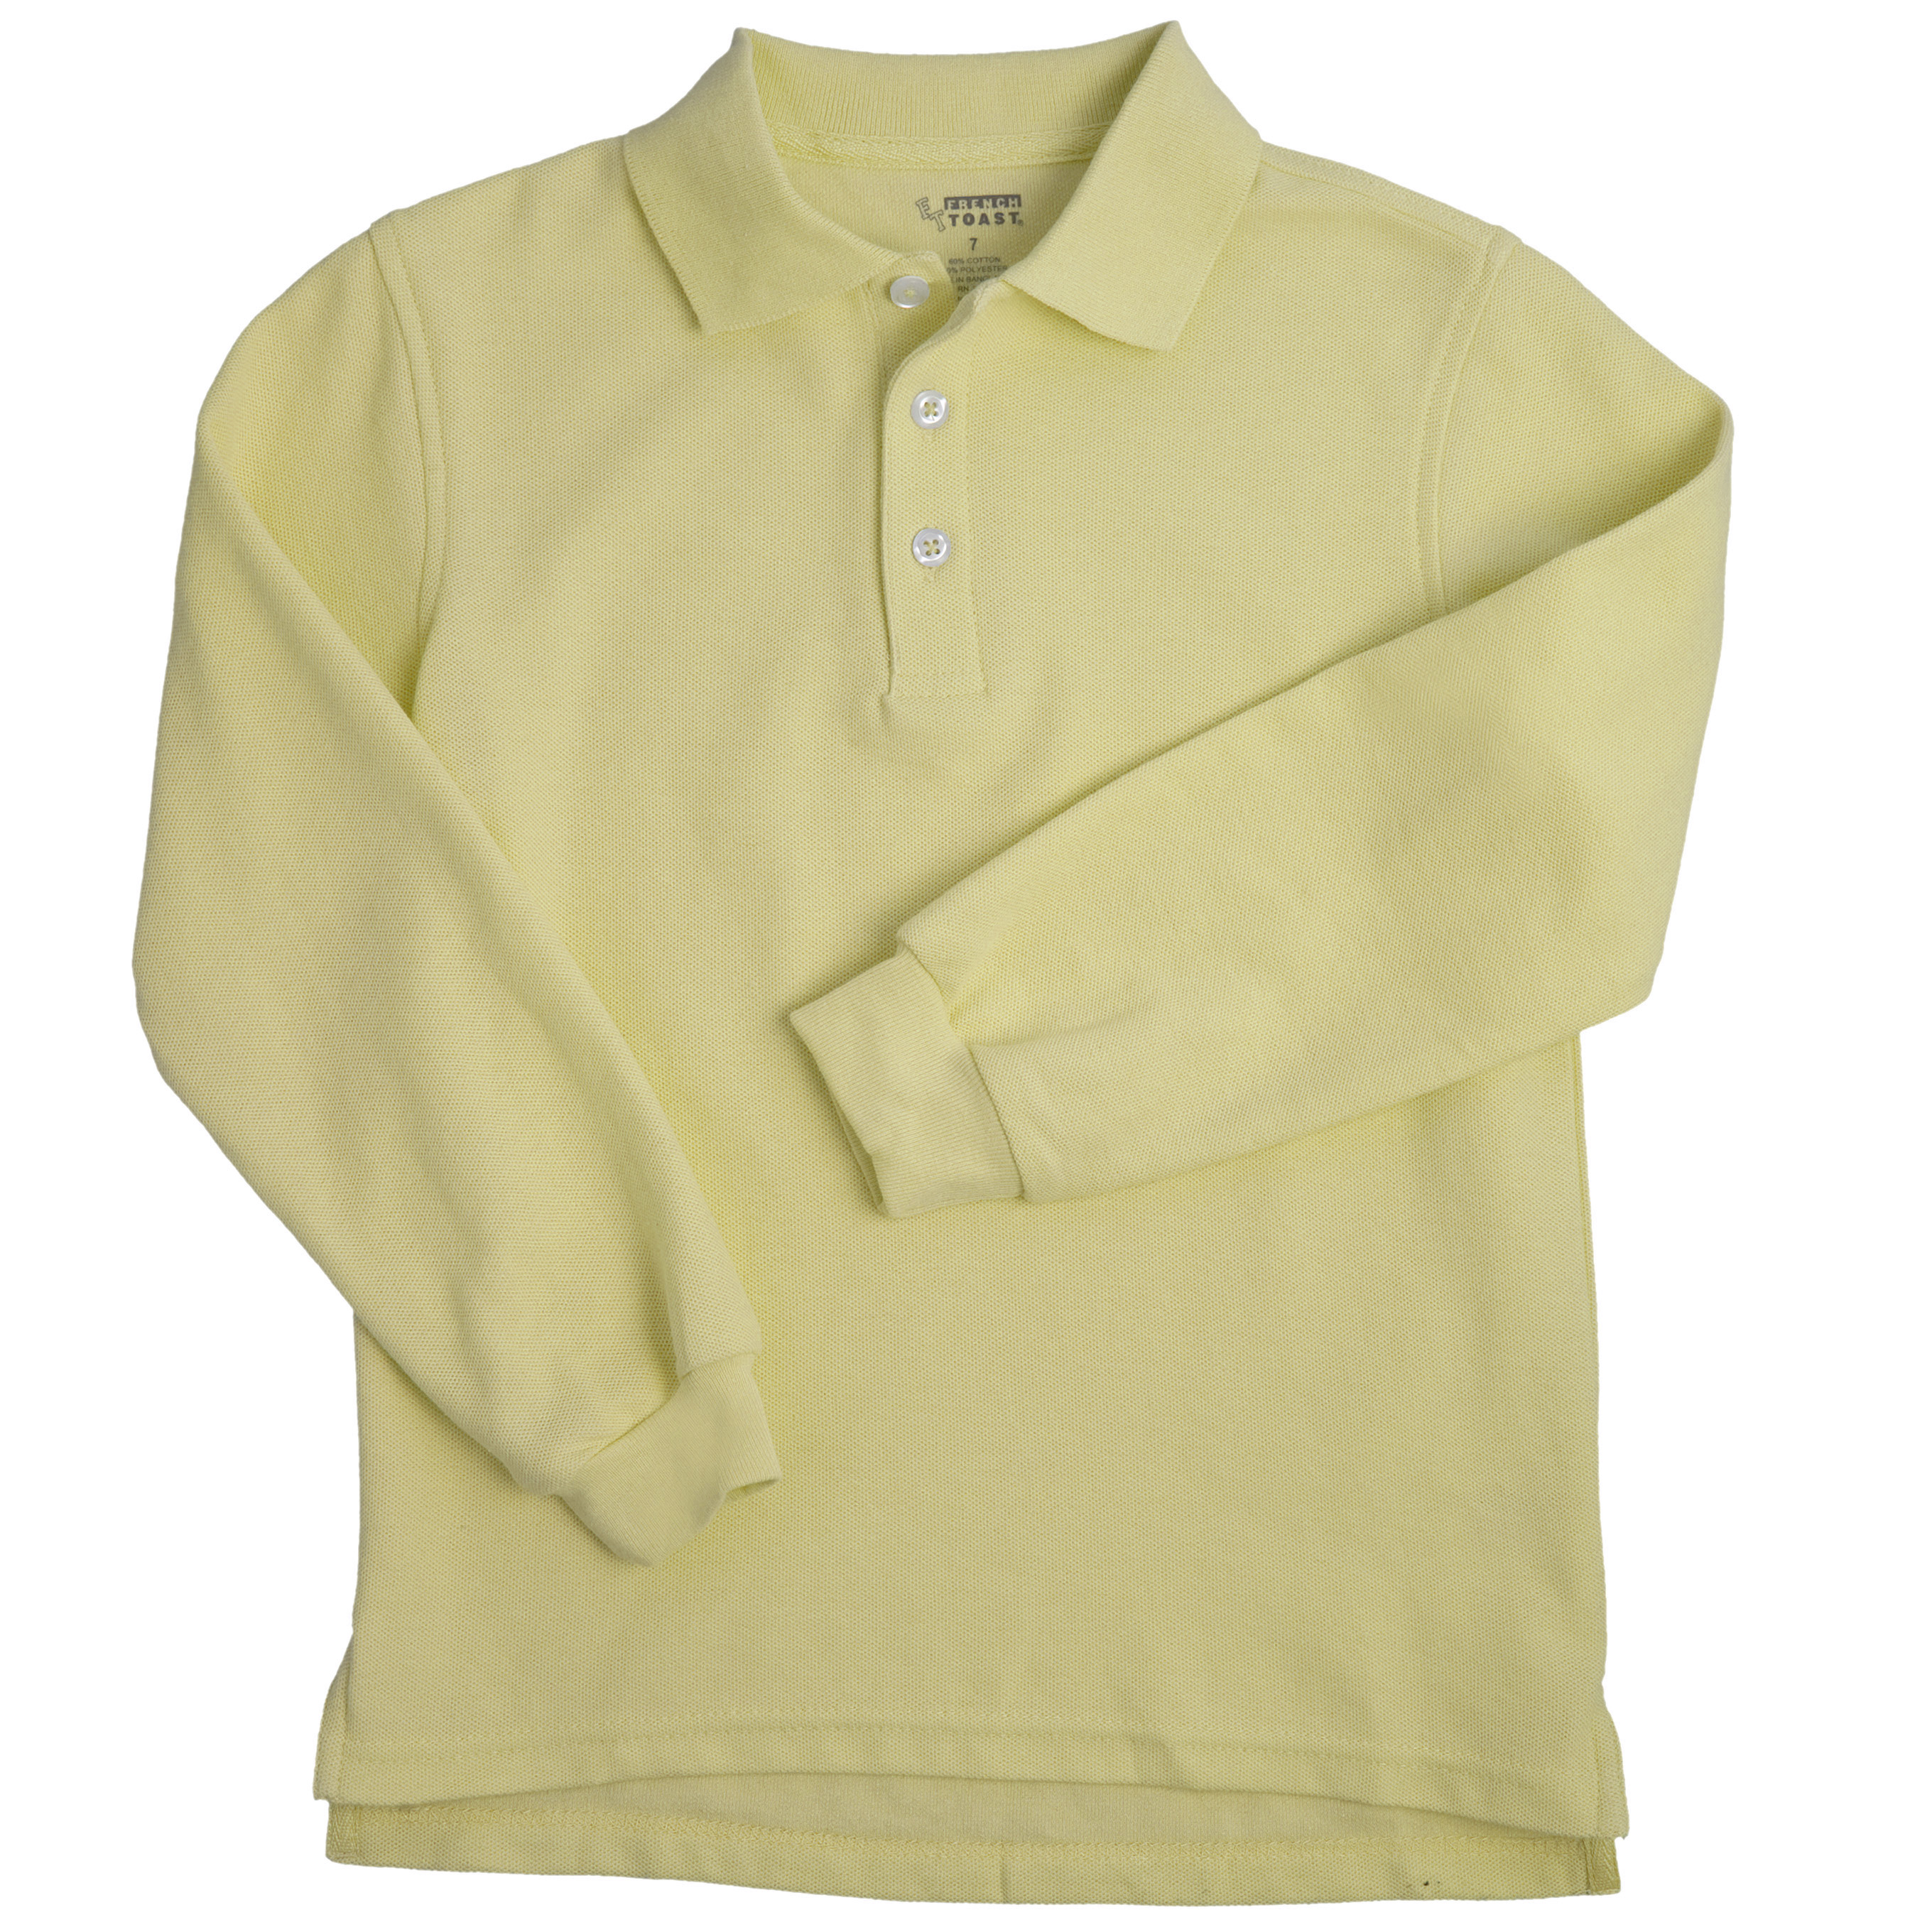 Unisex Short Sleeve Pique Polo Shirt